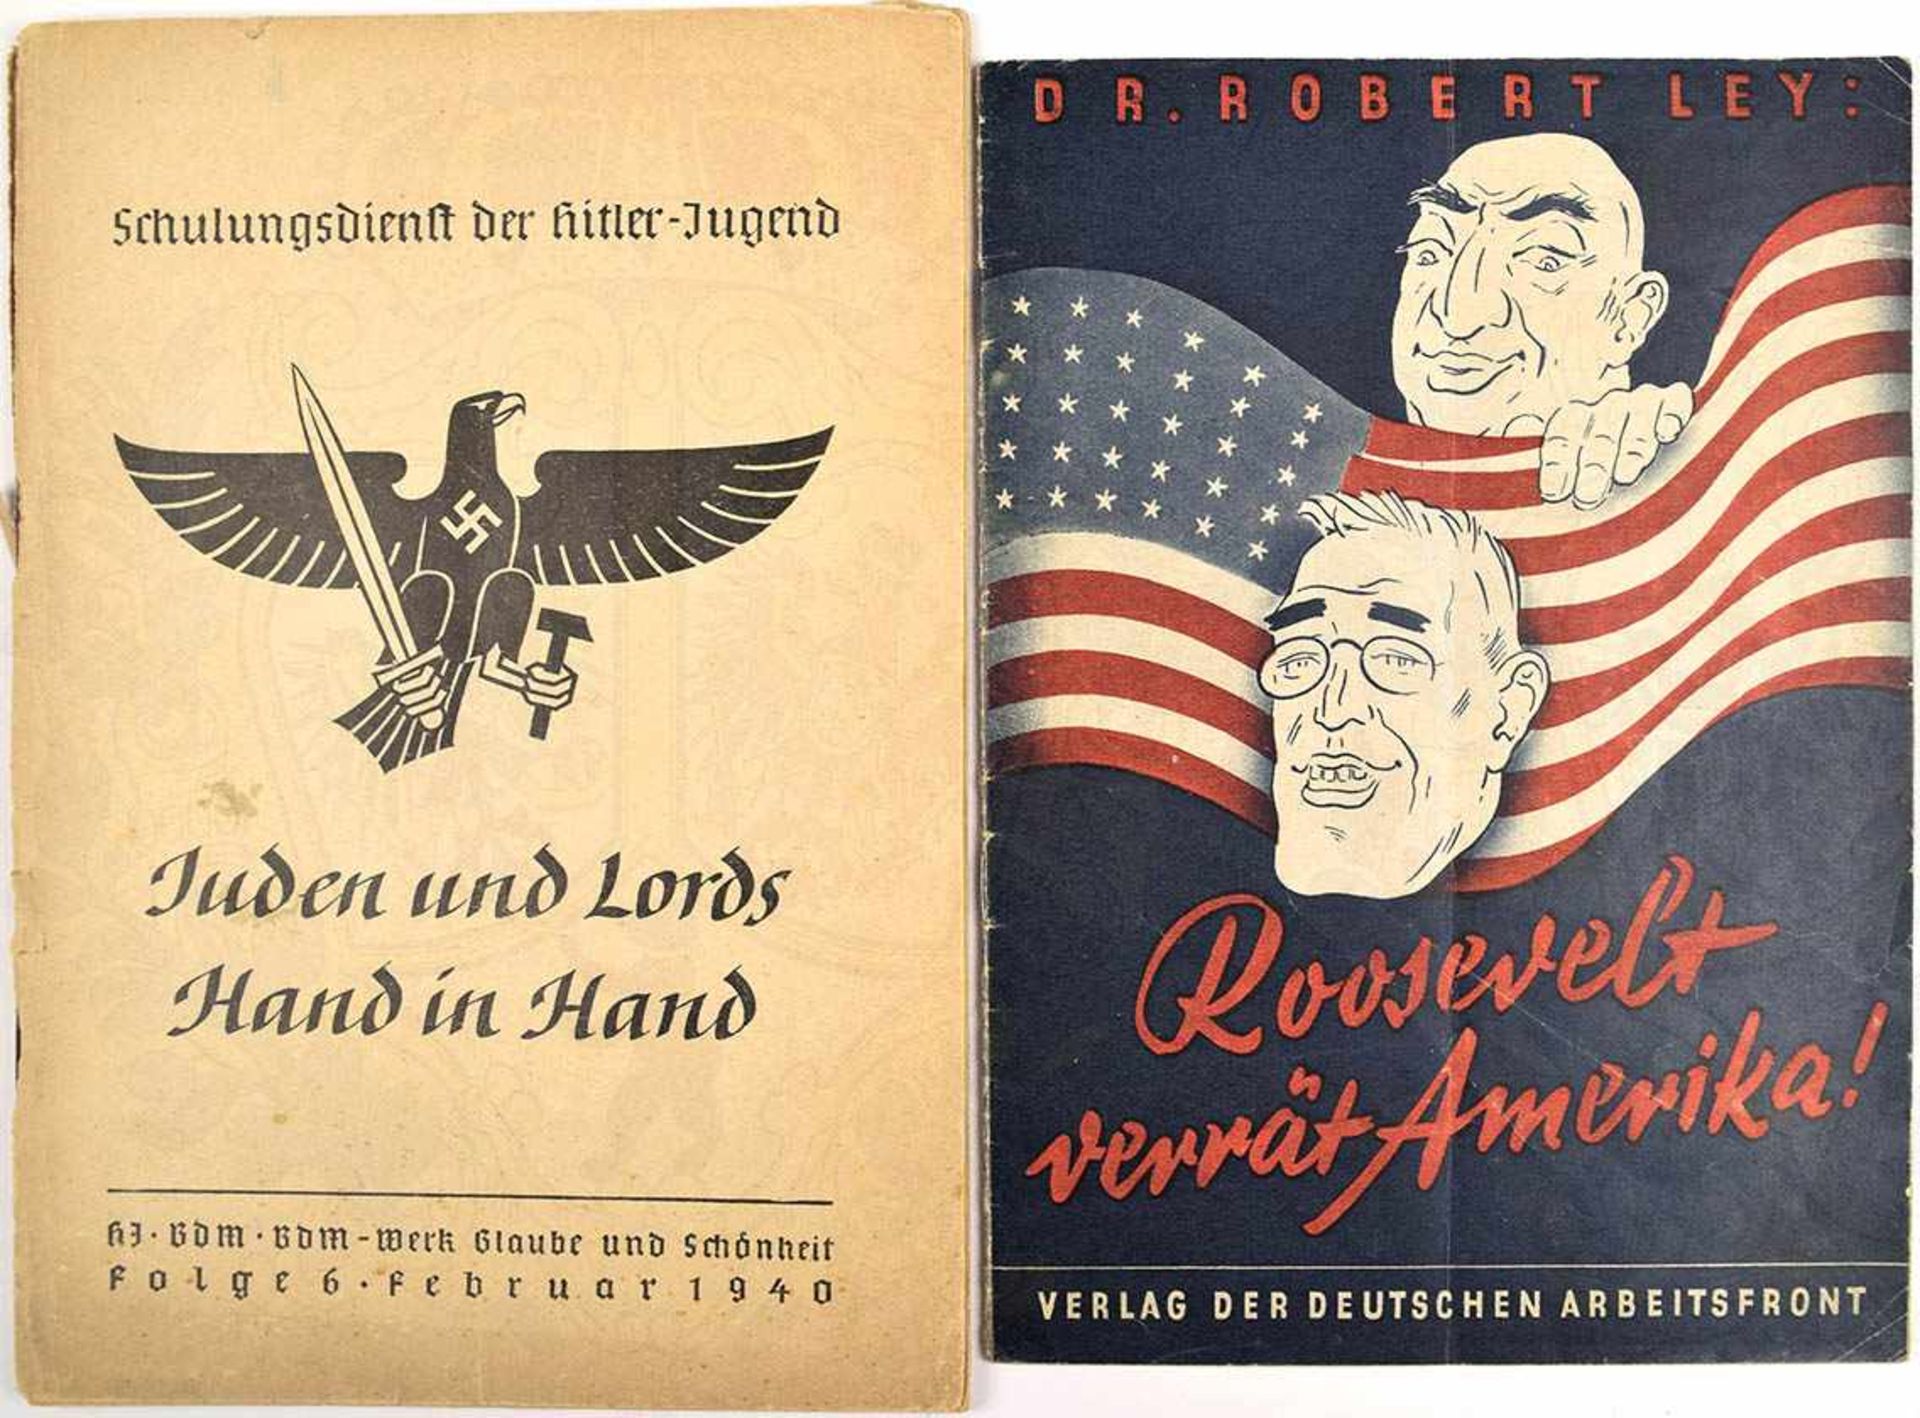 2 BROSCHÜREN, „Juden und Lords Hand in Hand“, 1940, 48 S., Einband lose; „Roosevelt verrät Amerika“,